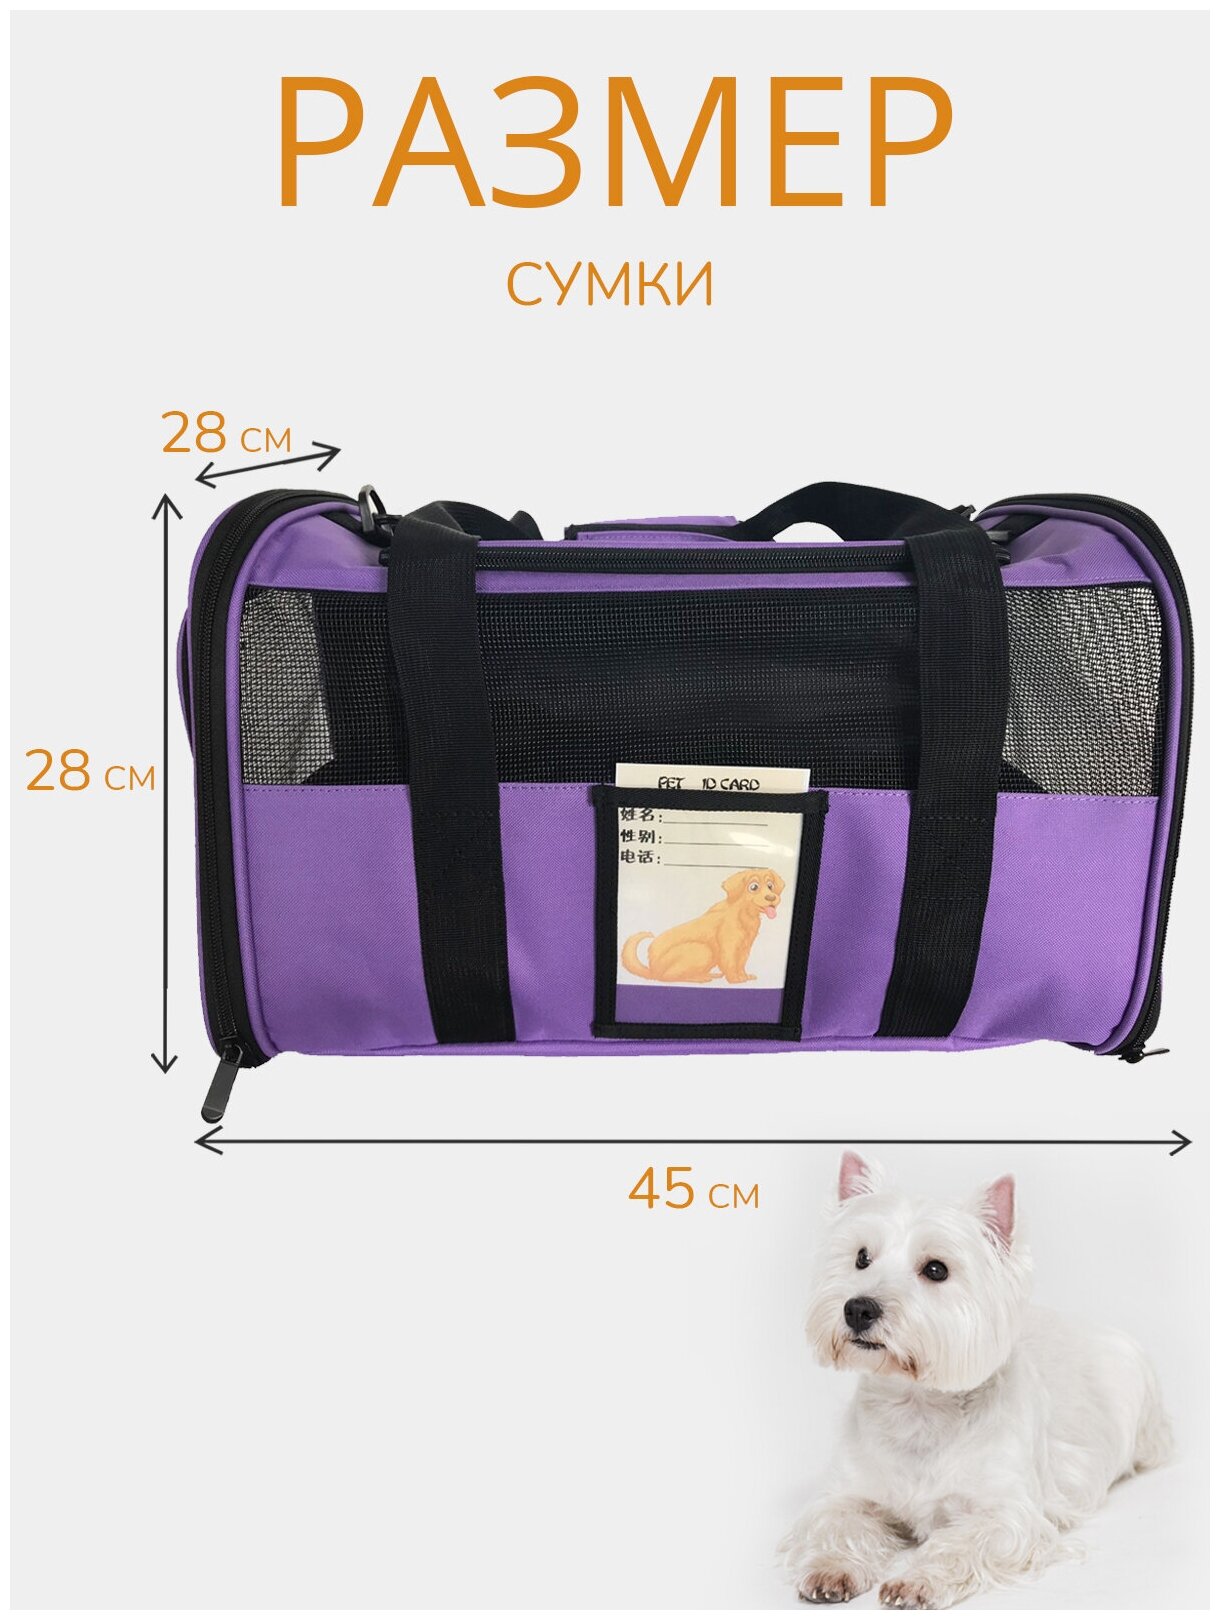 Переноска для животных ZES, сетчатая сумка для переноски кошек и собак мелких пород, размер 45х28х28, фиолетового цвета - фотография № 6